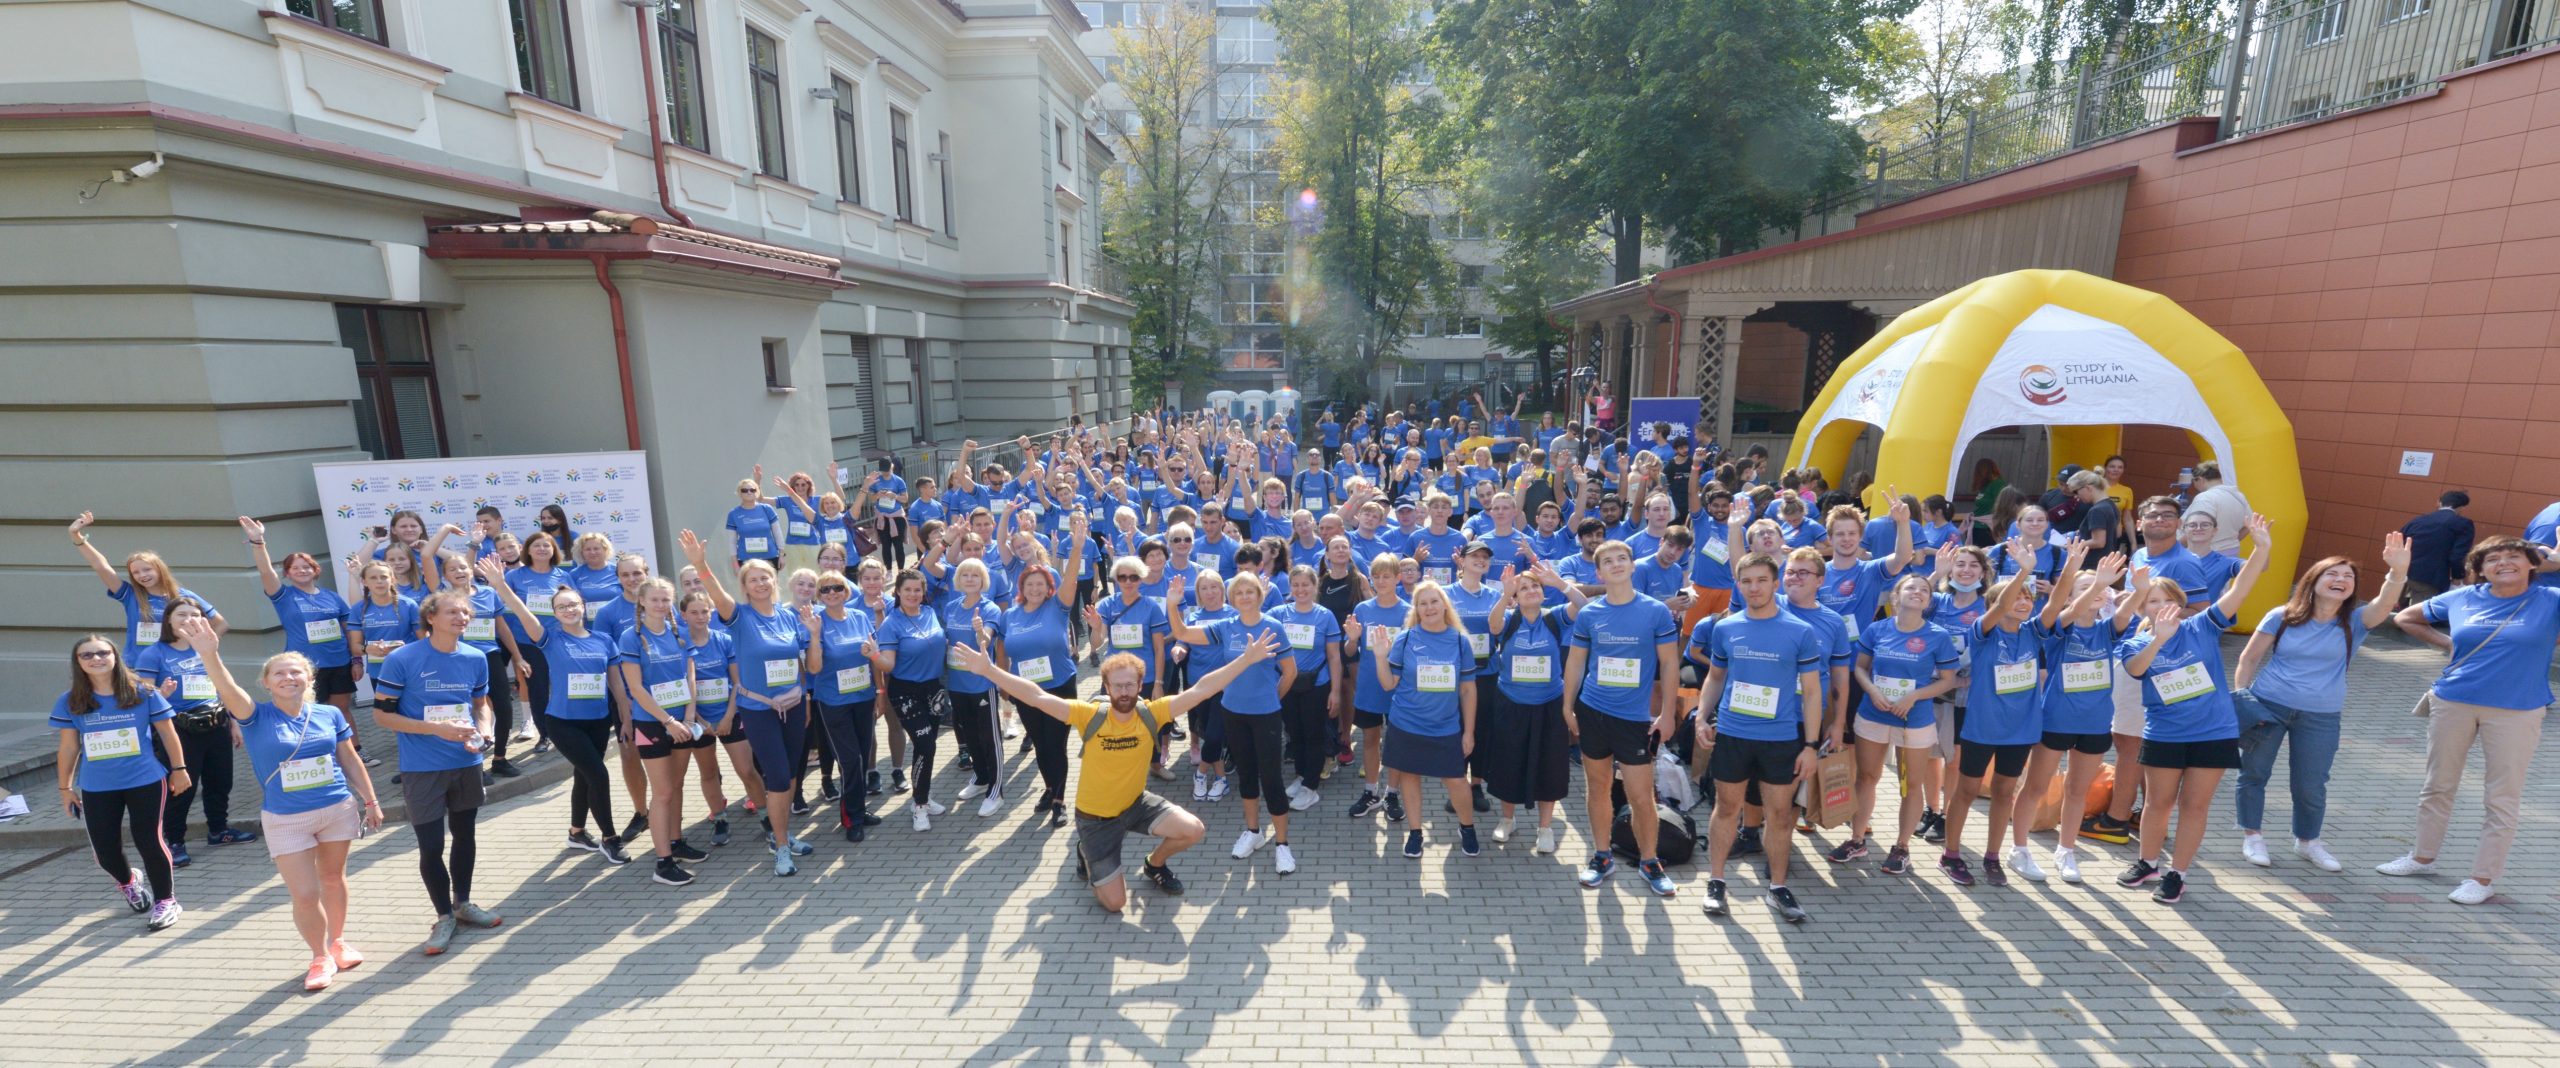 Didžiausia RIMI Vilniaus maratono komanda „Erasmus+“ primena: gyvenimas nesustojo